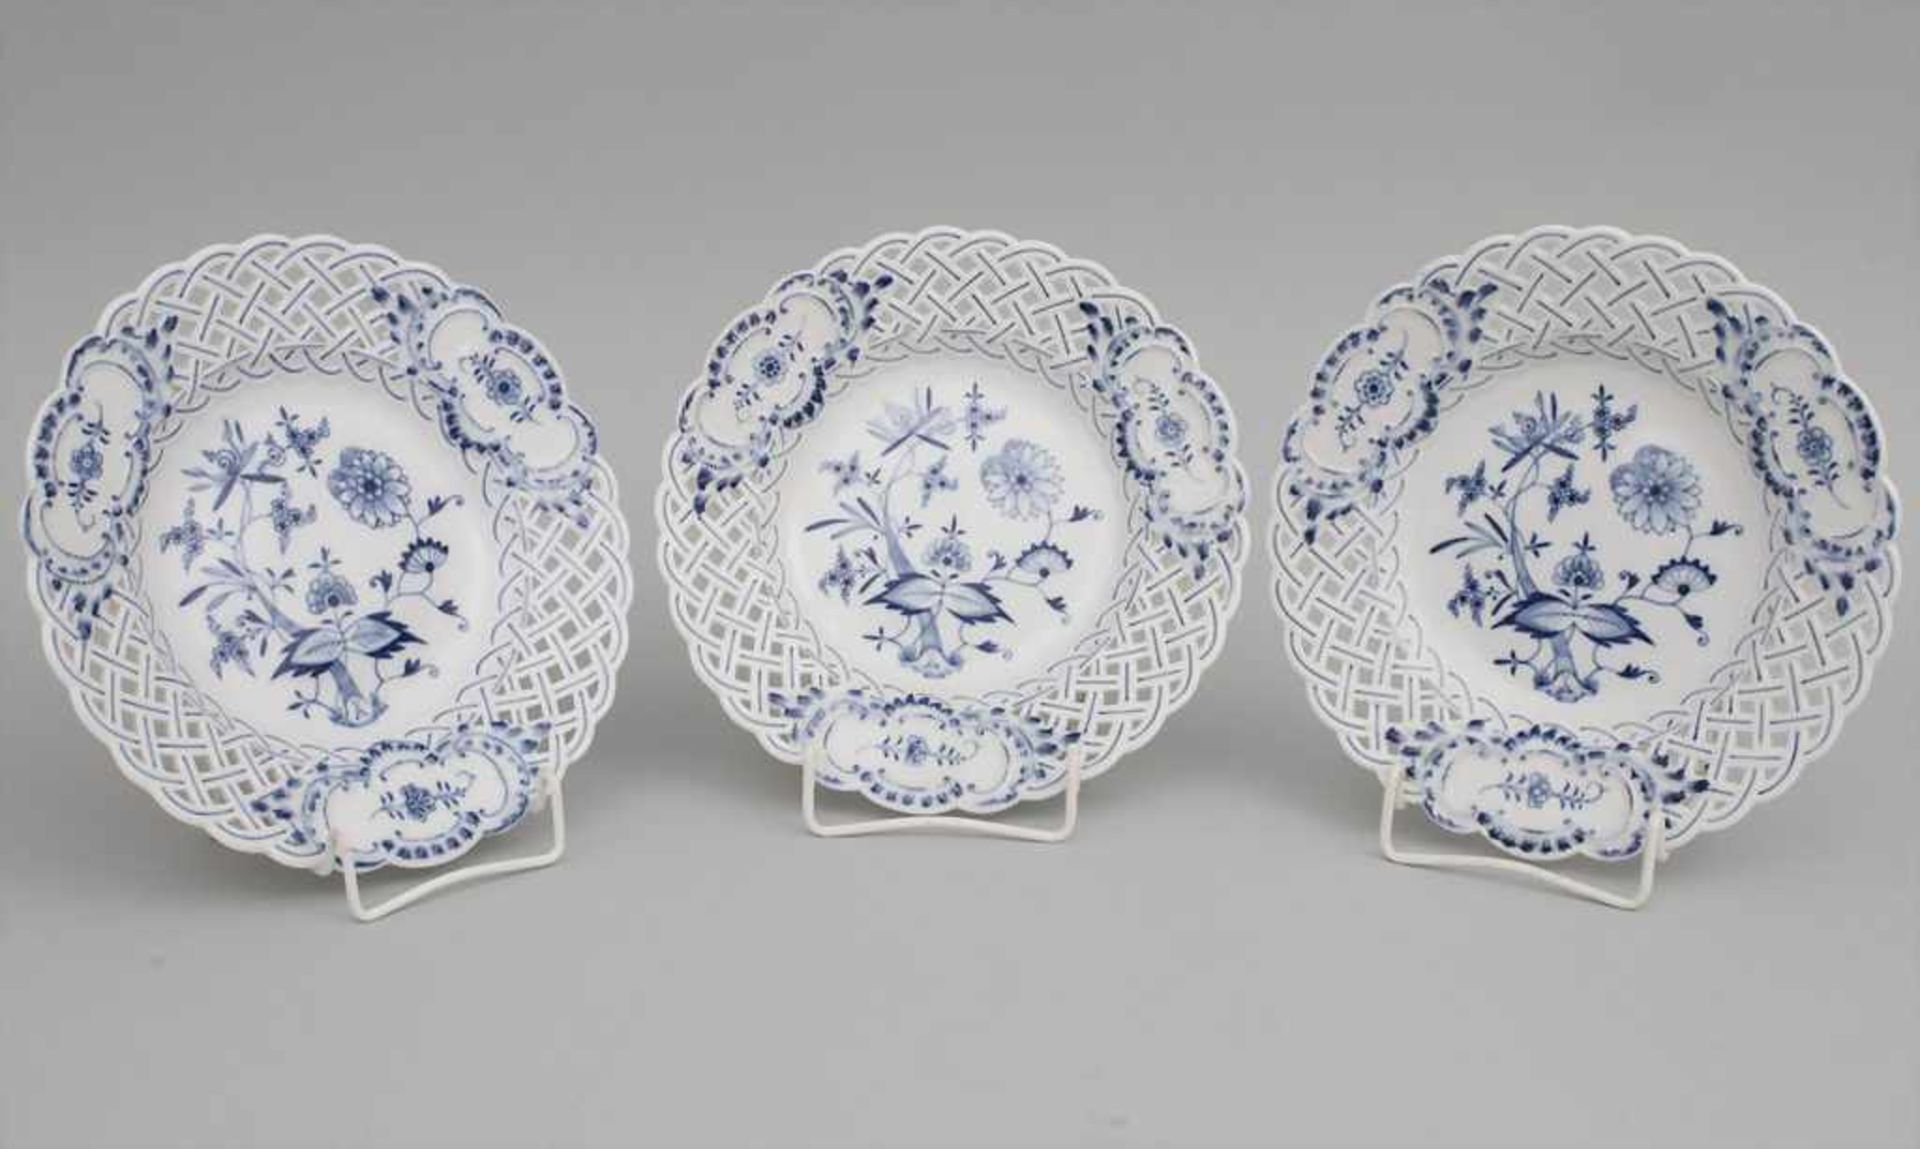 3 Durchbruchteller mit Zwiebelmuster / 3 reticulated plates with blue 'Onion Pattern', Meissen,